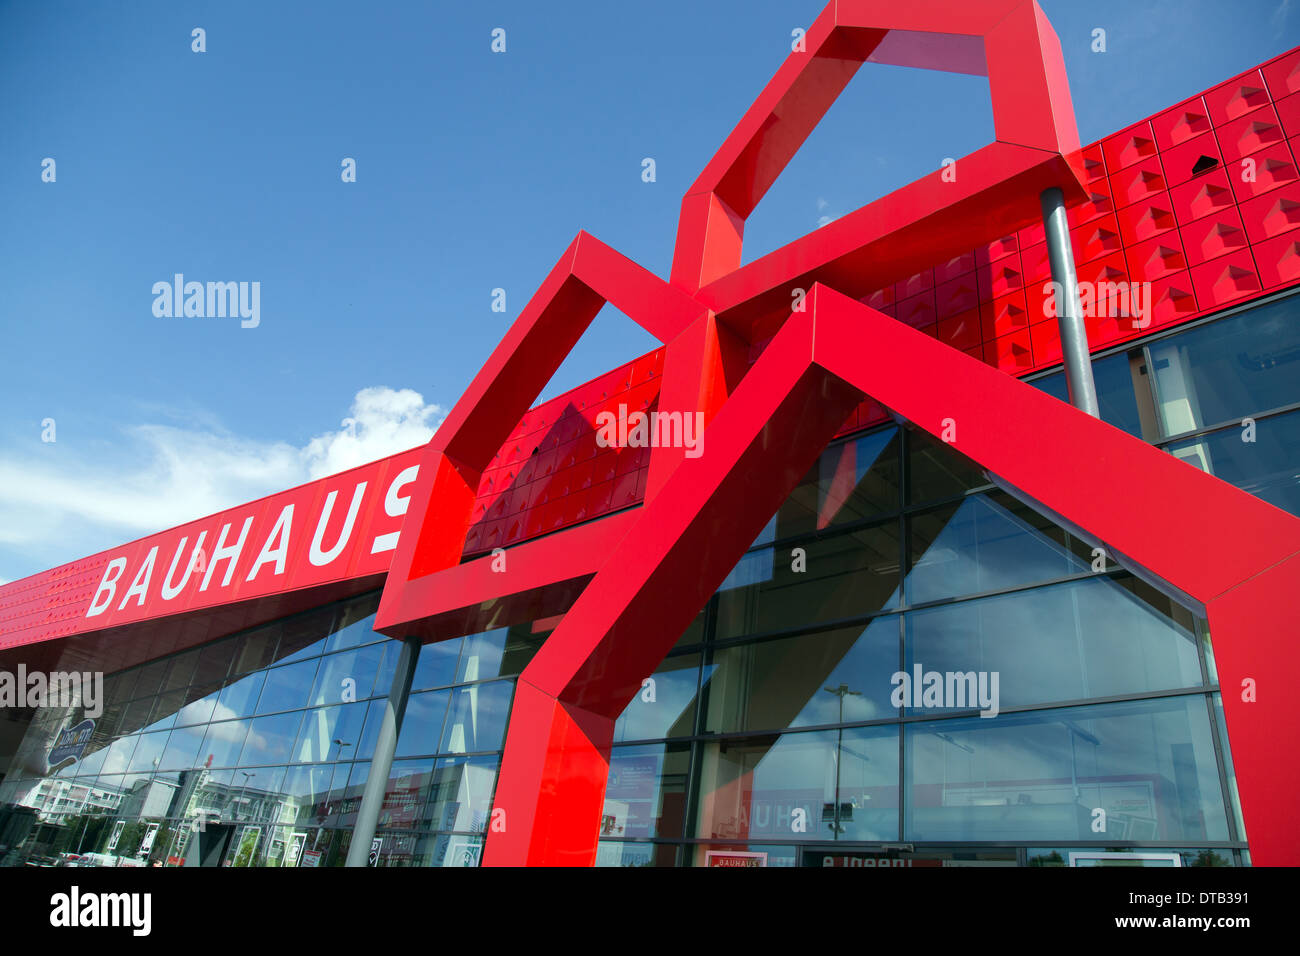 Bremen, Allemagne, bricolage Bauhaus chaîne Banque D'Images